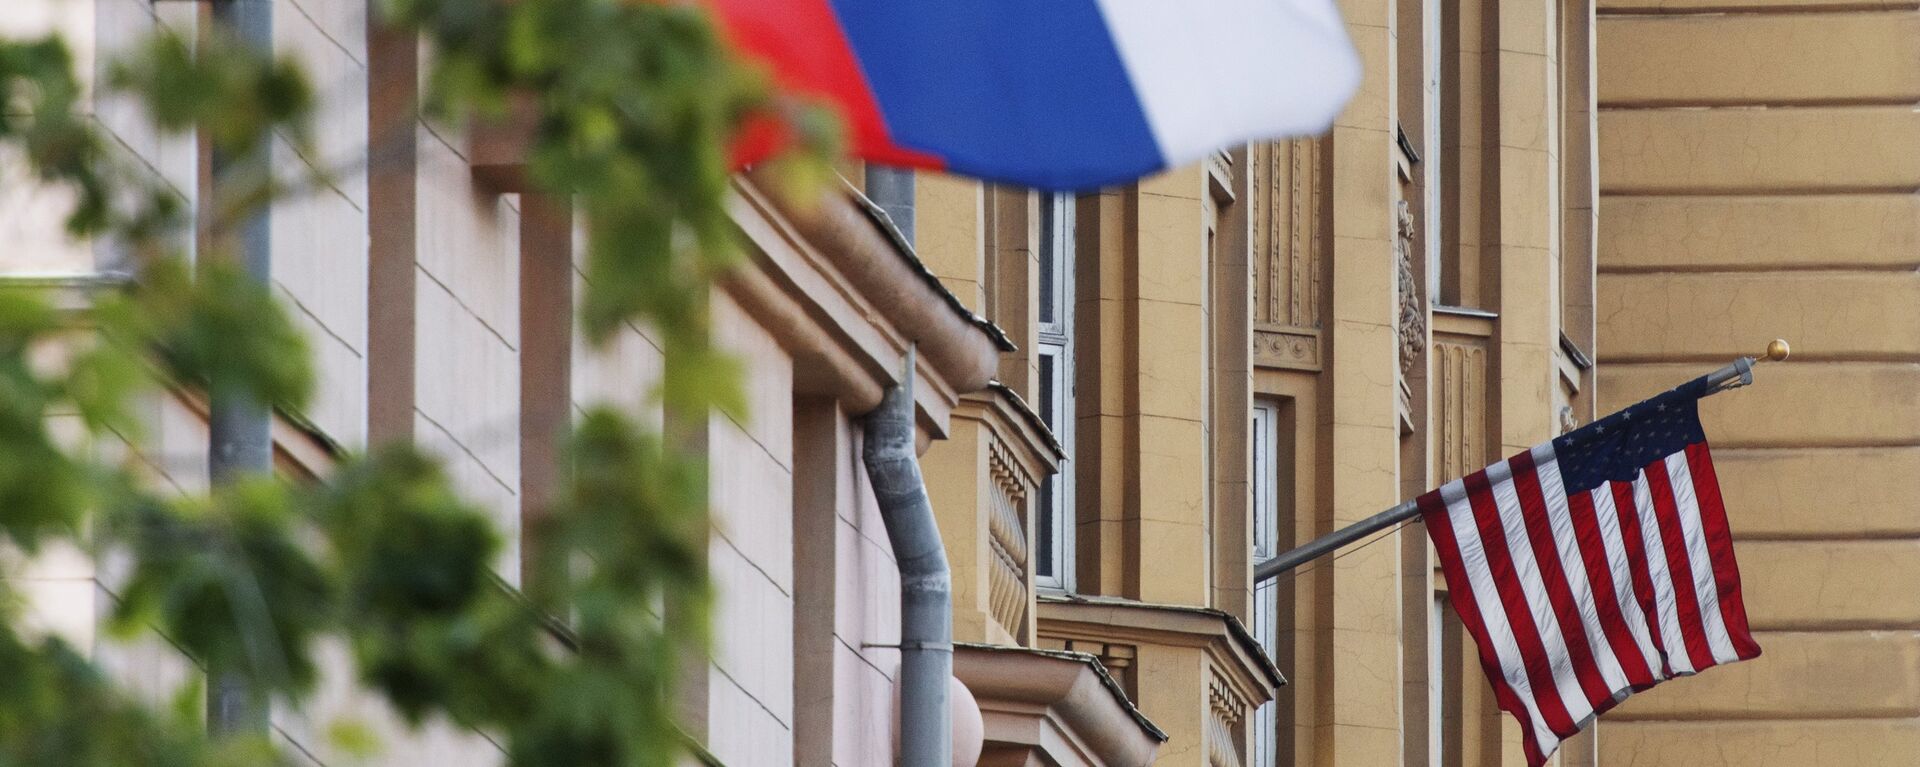 Banderas de EEUU y de Rusia en las proximidades de la Embajada de EEUU en Moscú. - Sputnik Mundo, 1920, 26.12.2020